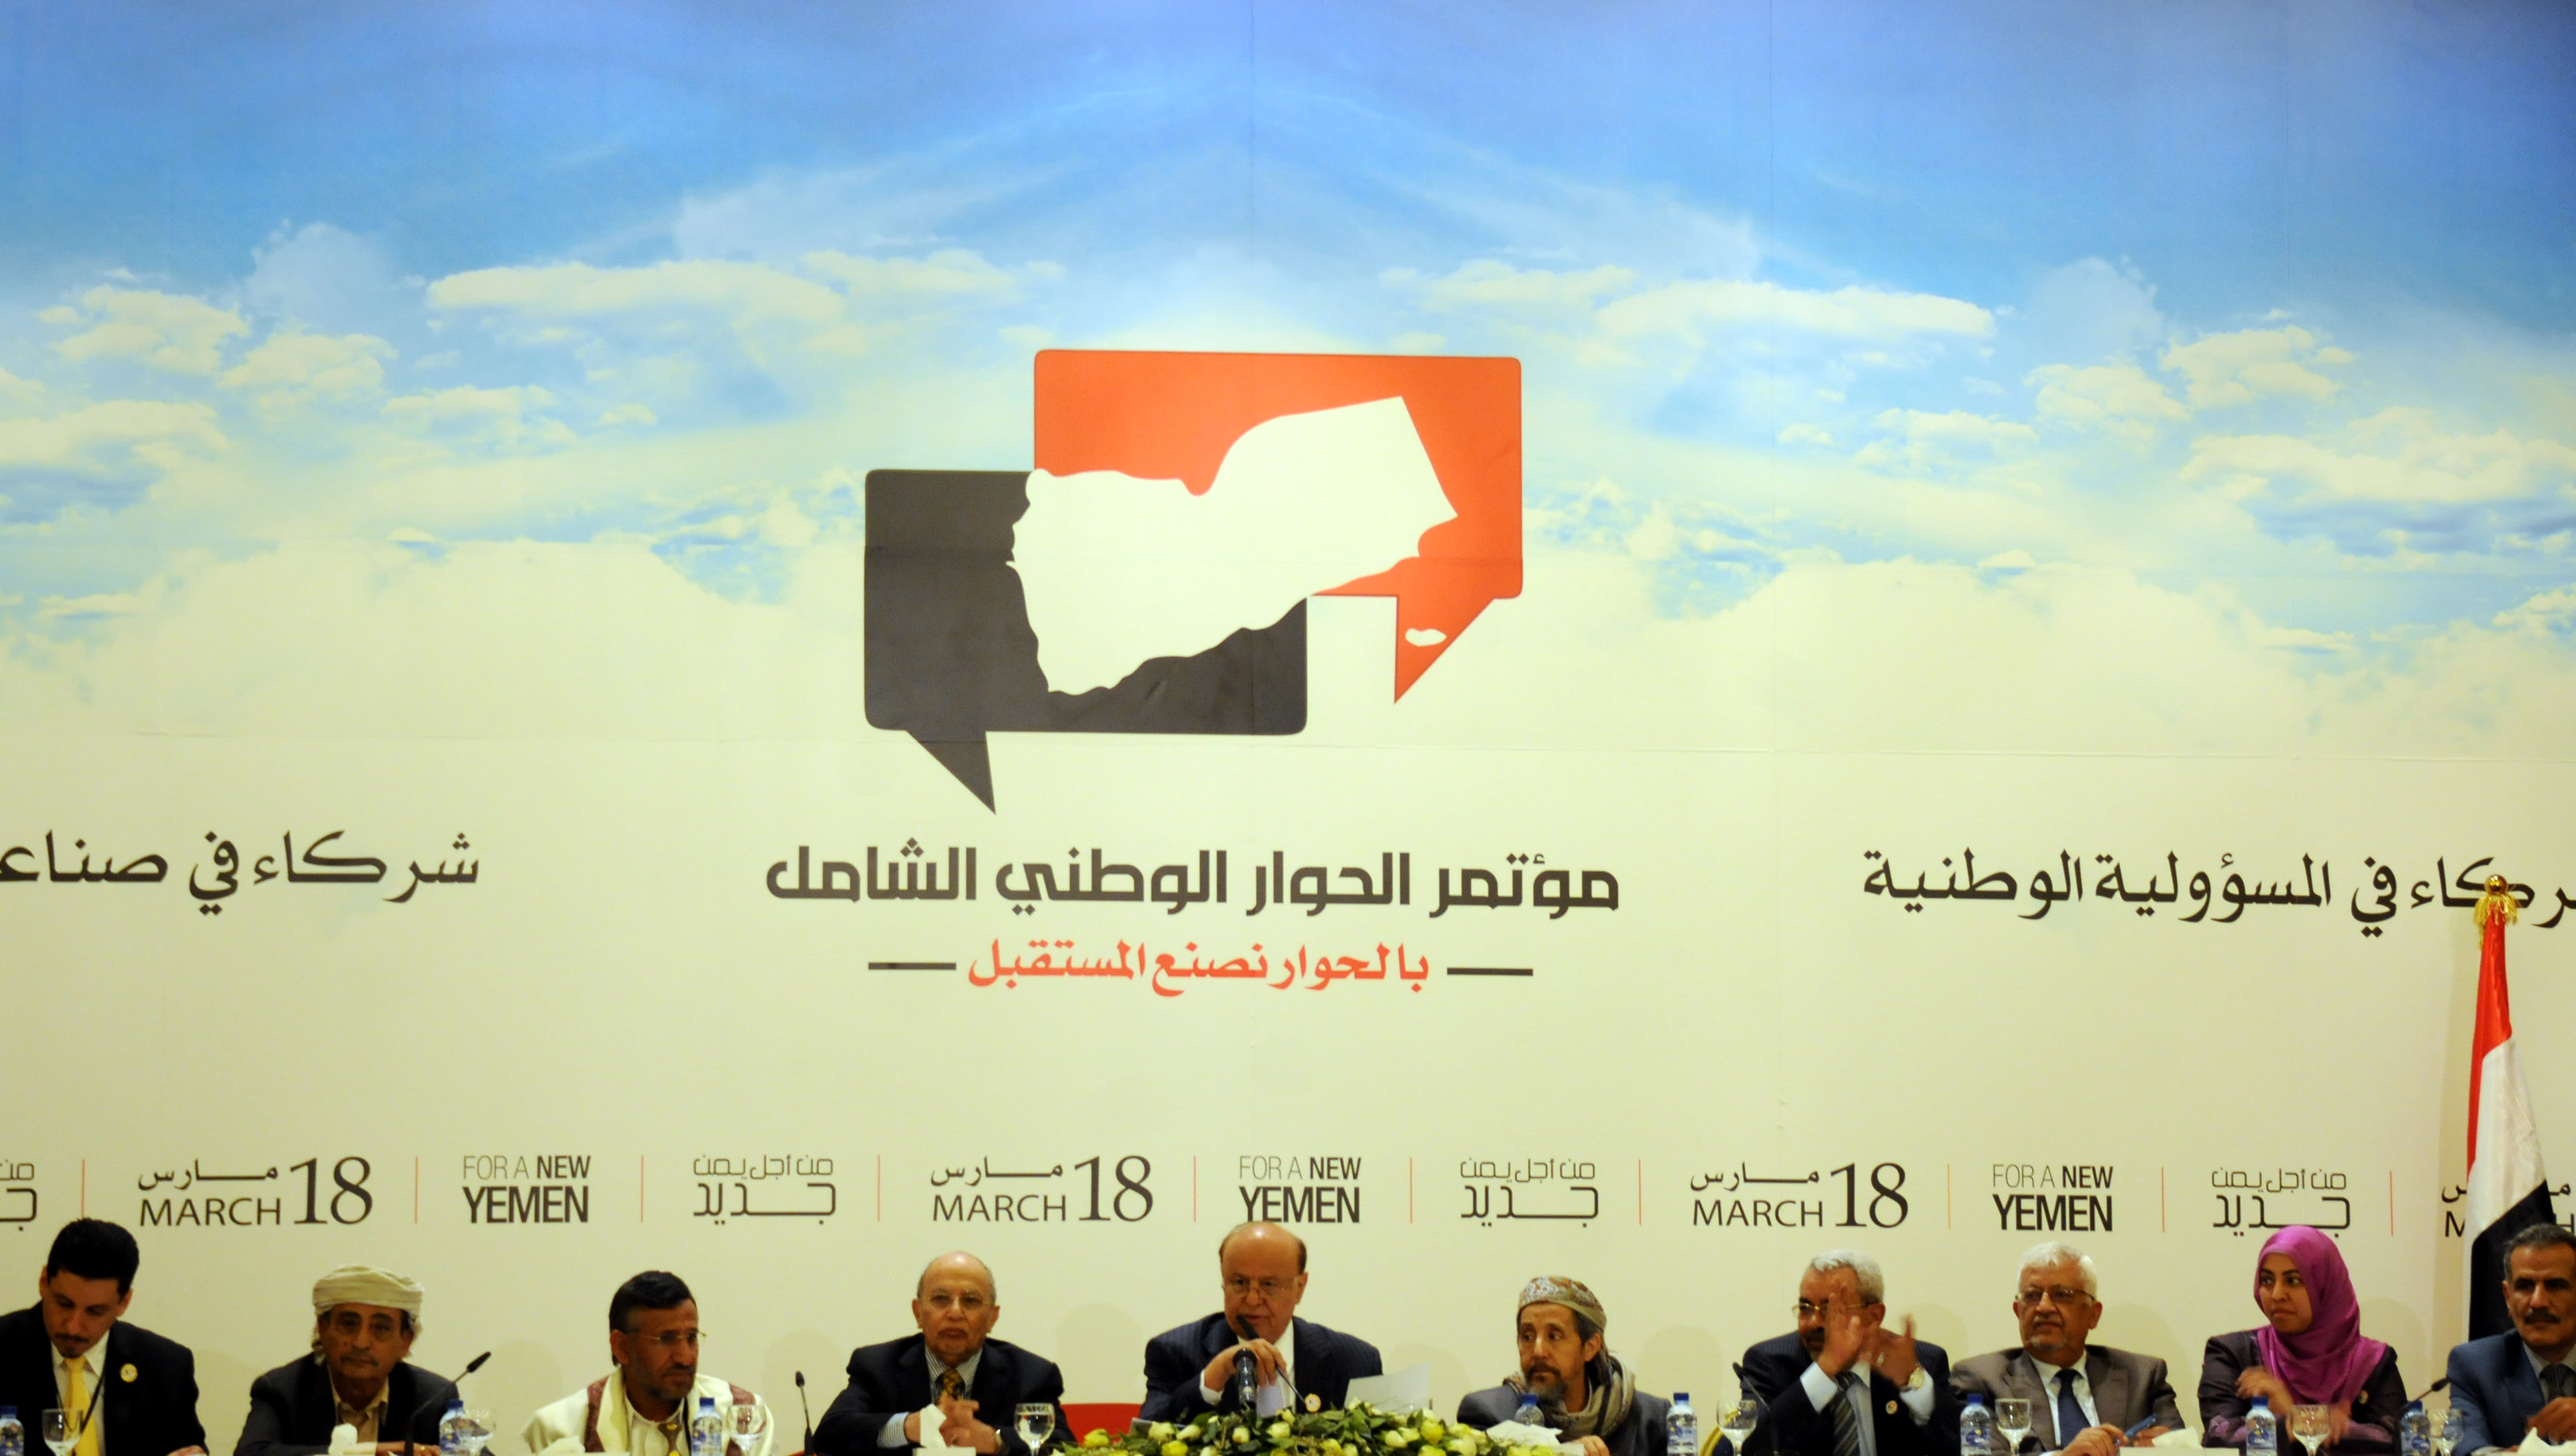   الرئاسة اليمنية ورئاسة المؤتمر يرفضان مقترح نقل النقاش الخاص بالقضية الجنوبية للخارج